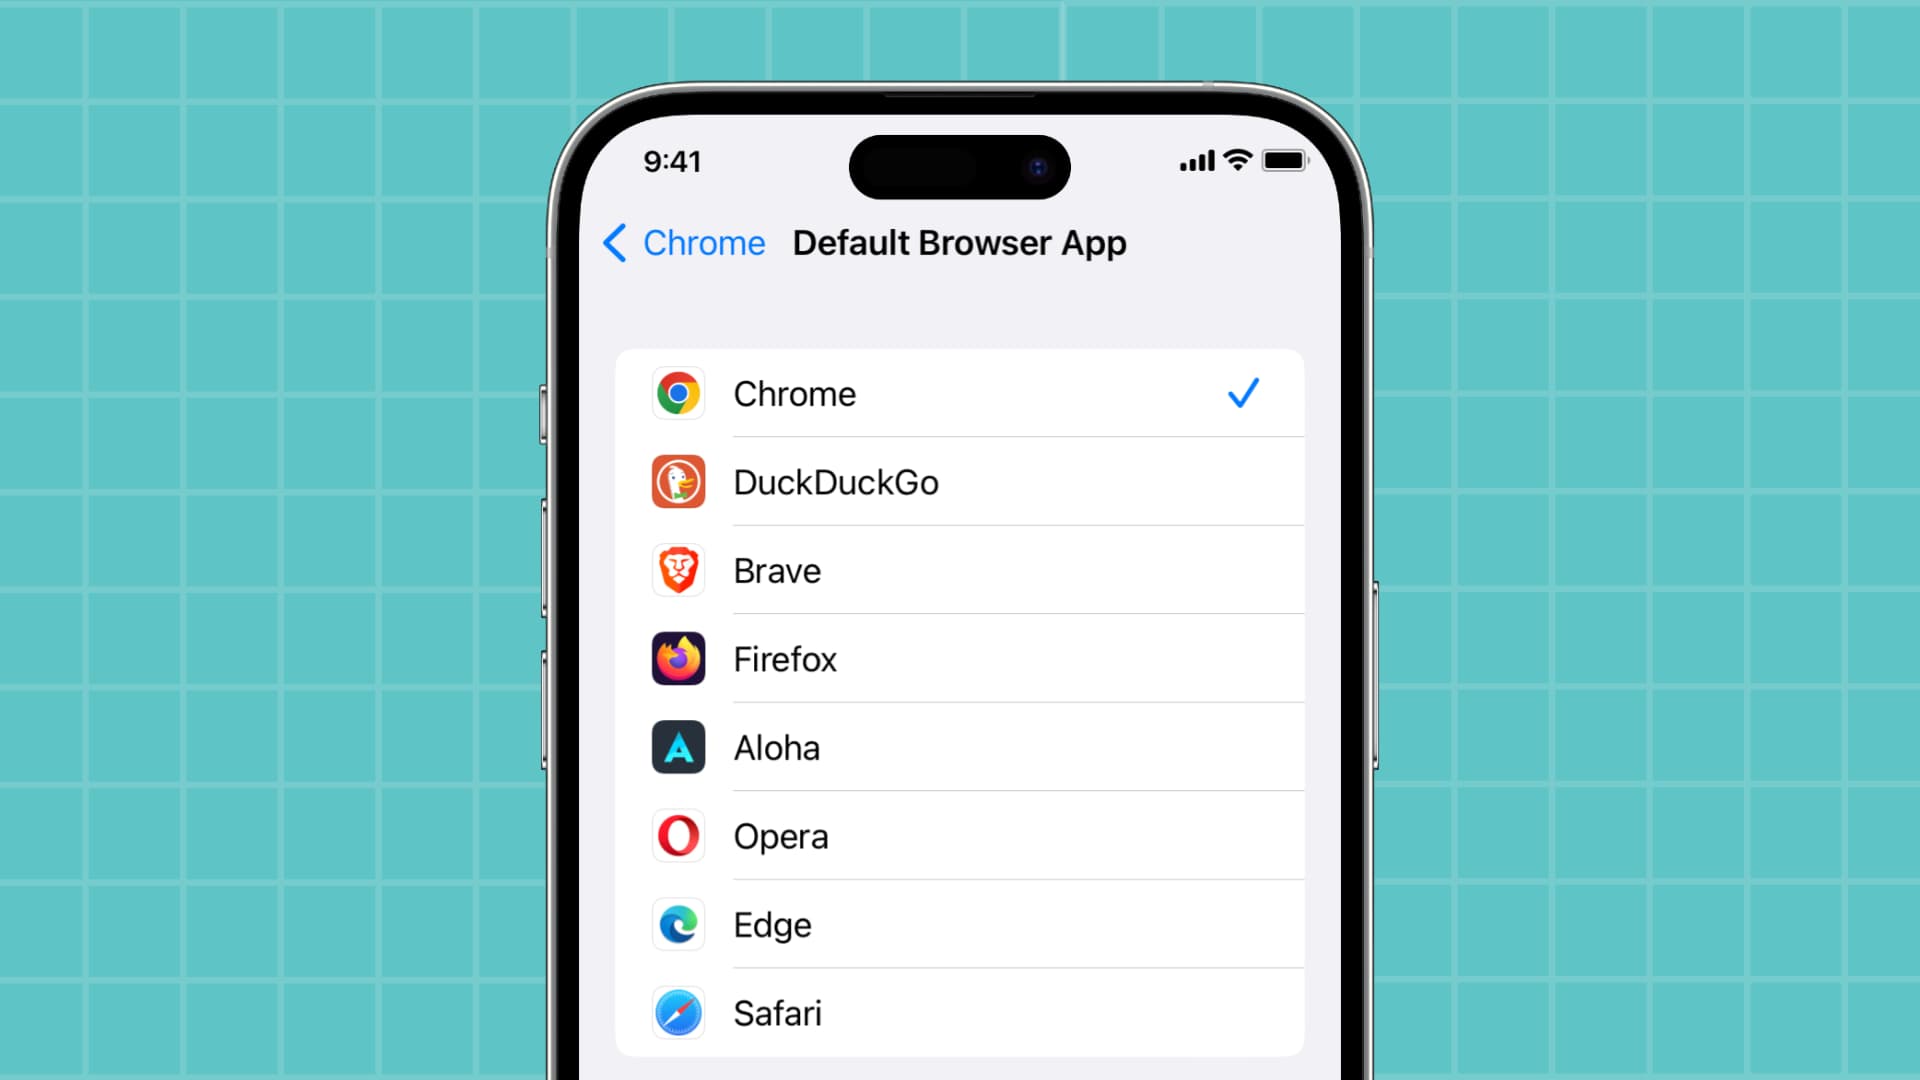 Choosing default web browser on iPhone